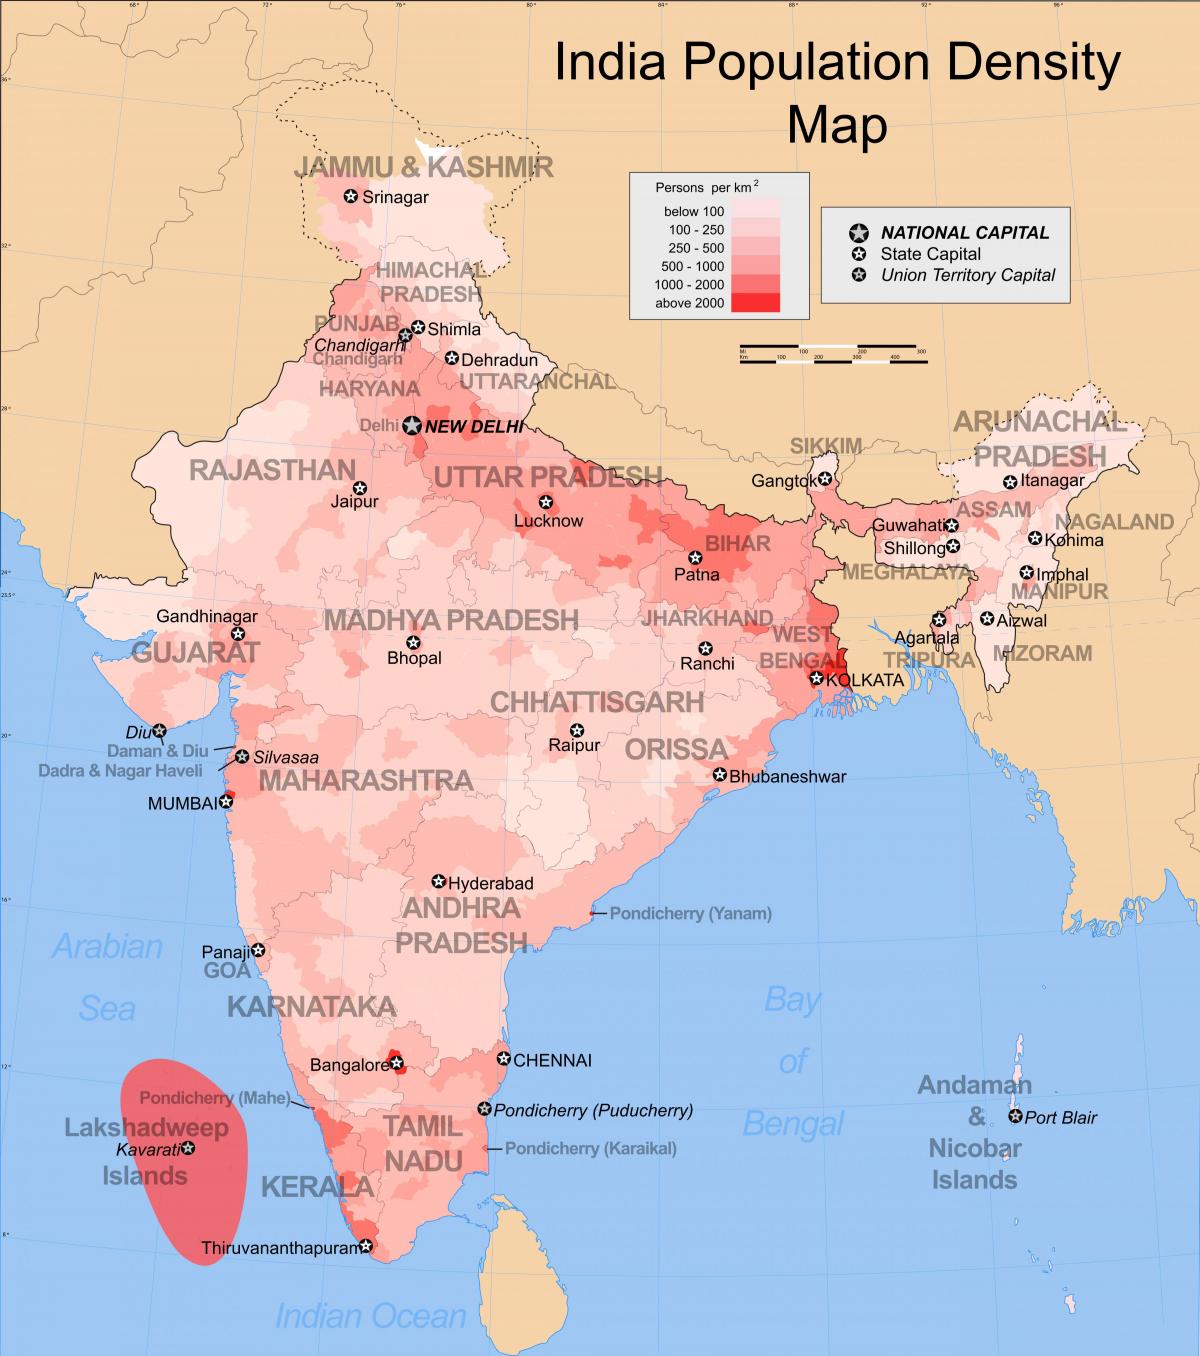 Dichtheidskaart van India